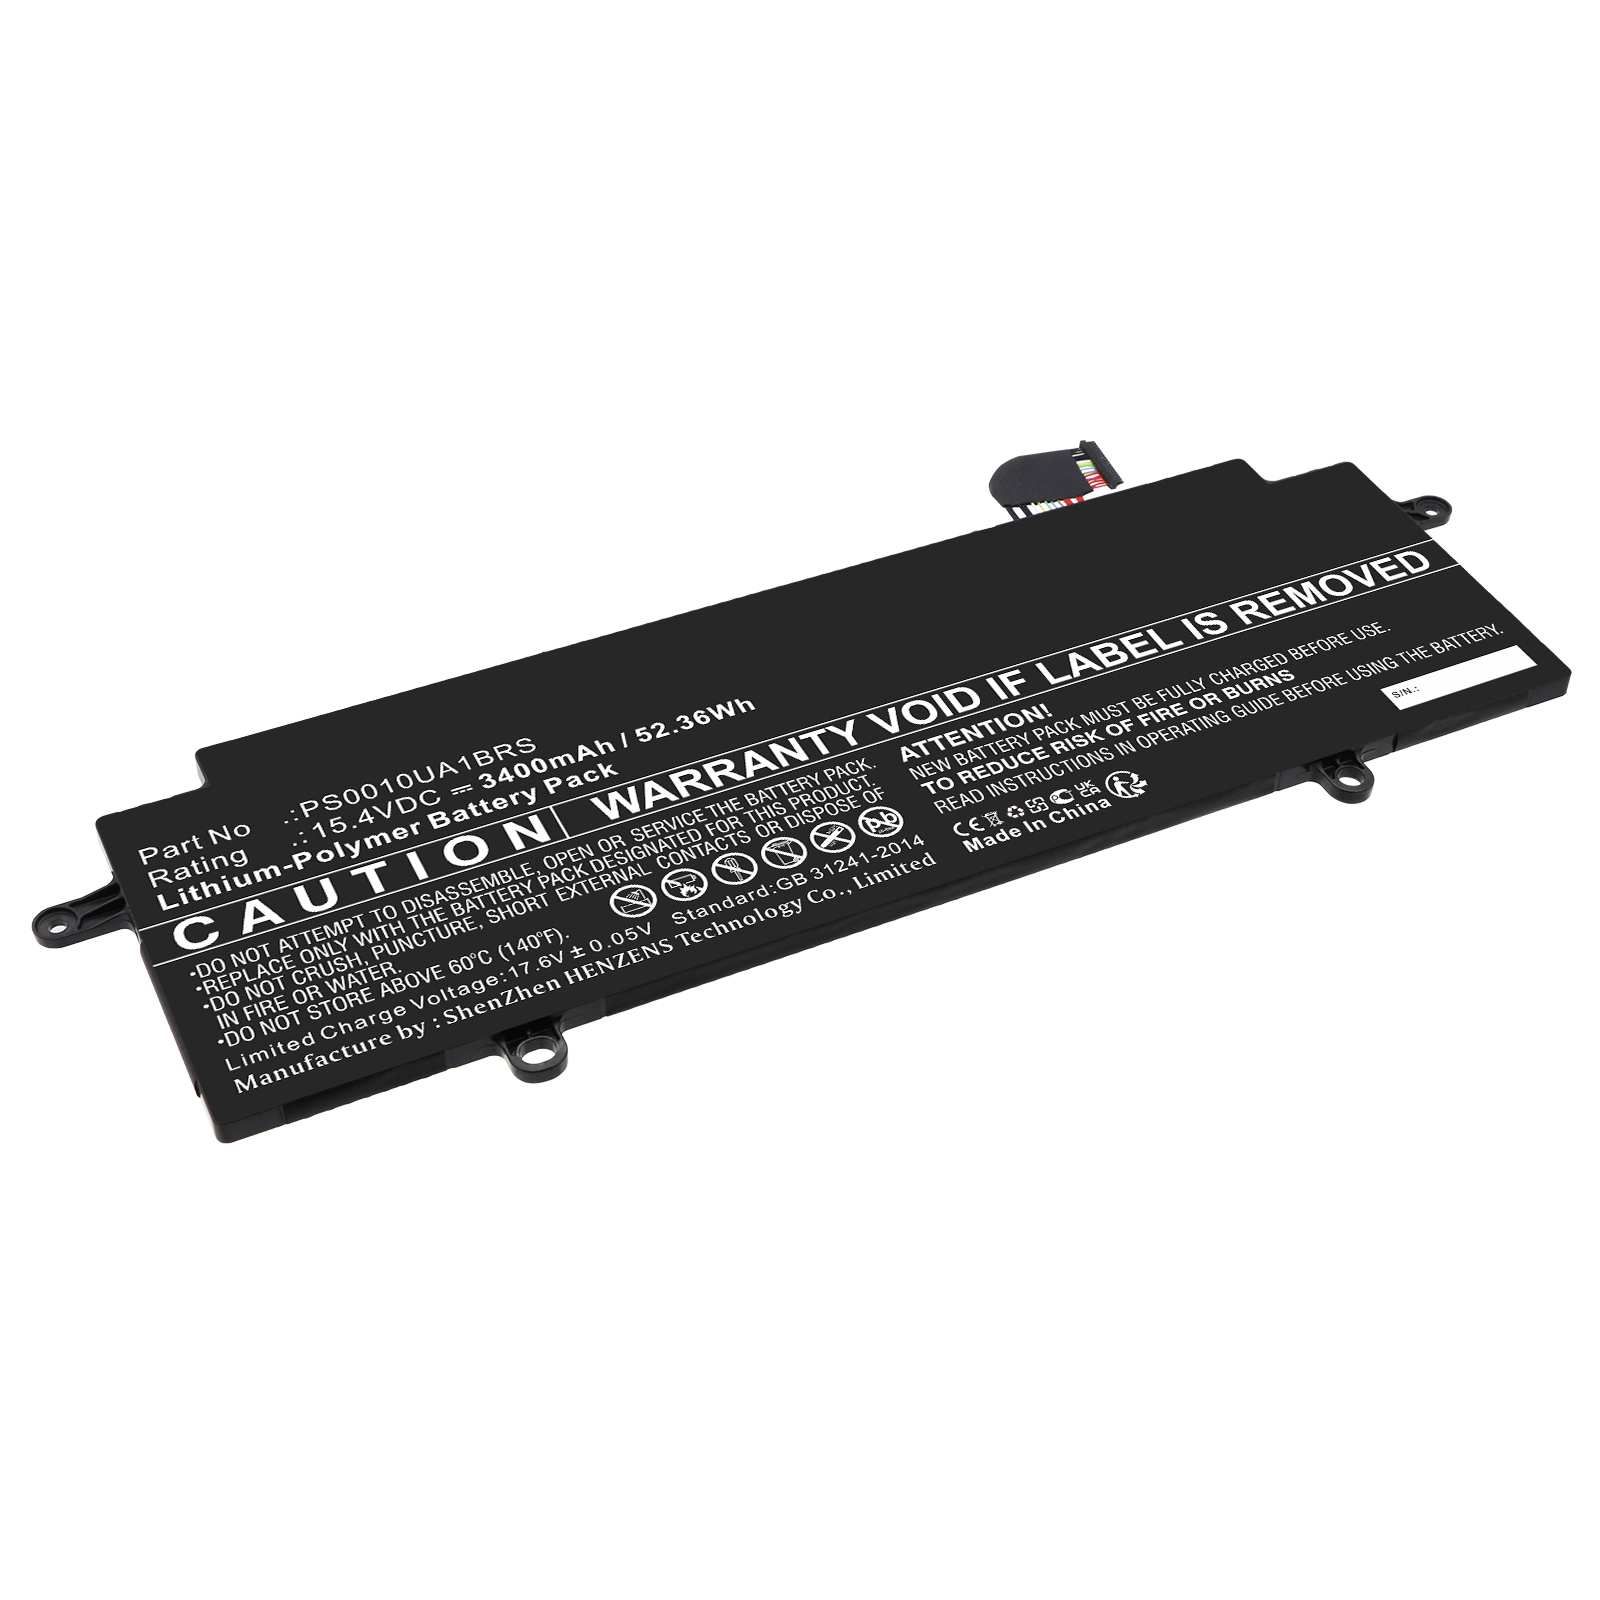 Synergy Digital Laptop Battery, Compatible with Dynabook PS0010UA1BRS Laptop Battery (Li-Pol, 15.4V, 3400mAh)